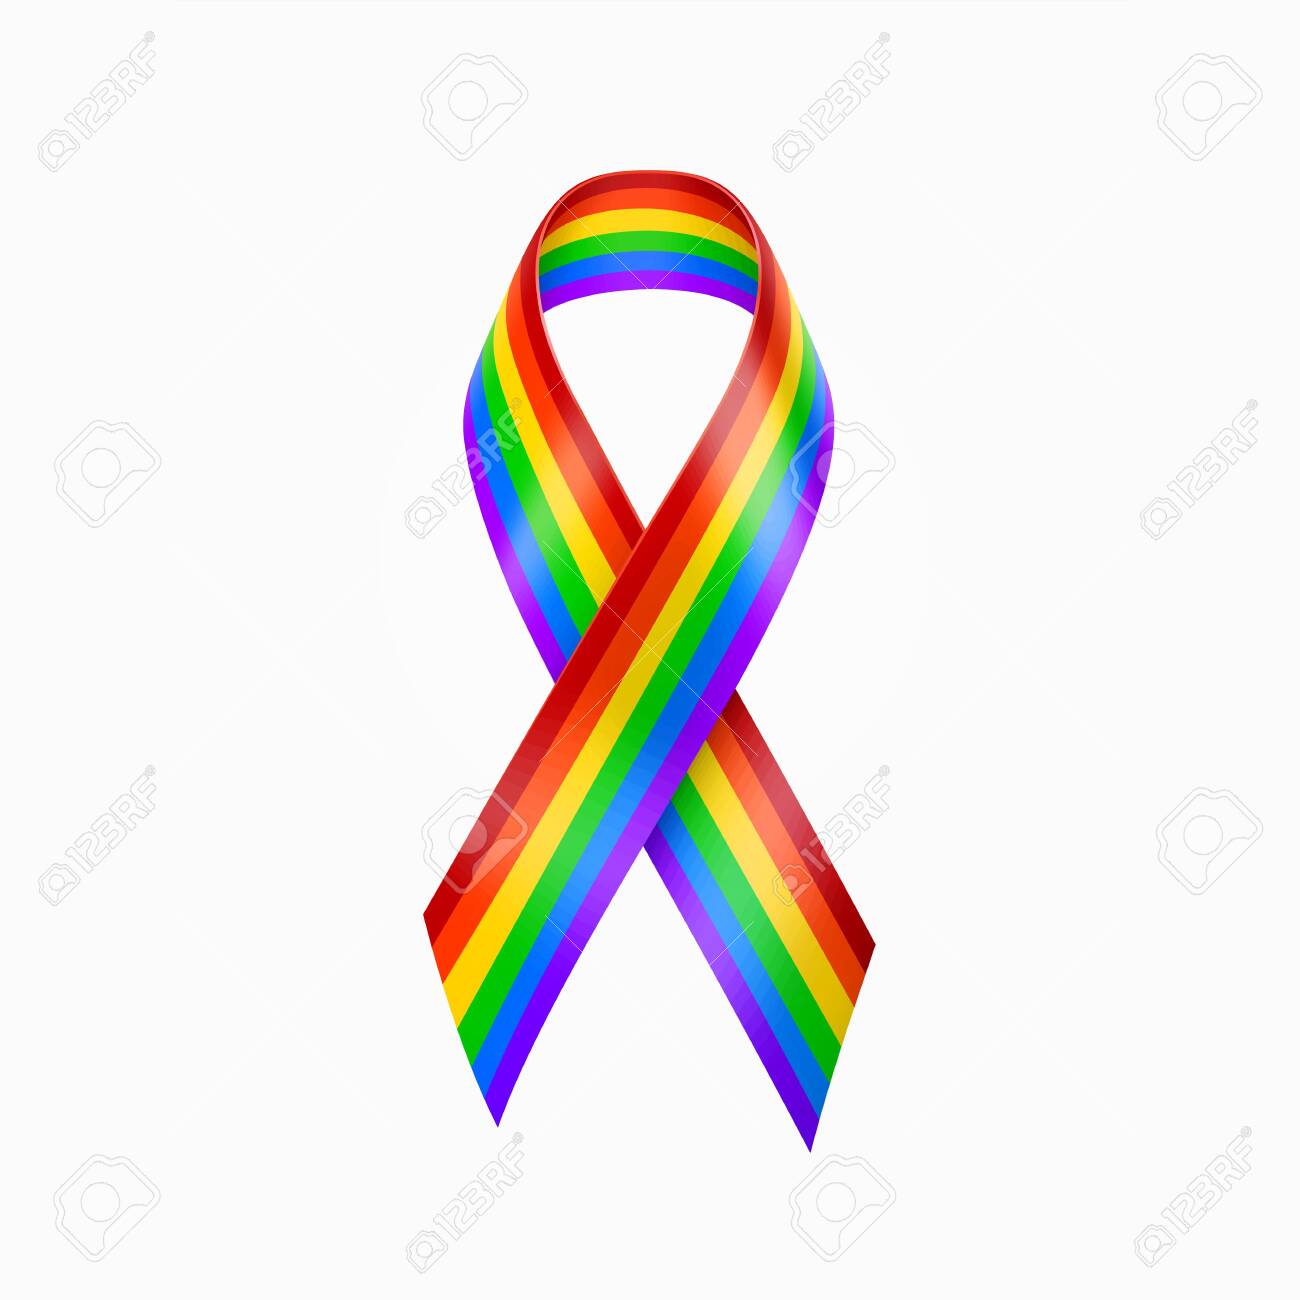 Rainbow Ribbon. Gay pride, LGBT rainbow ribbon. Homosexual sign vector